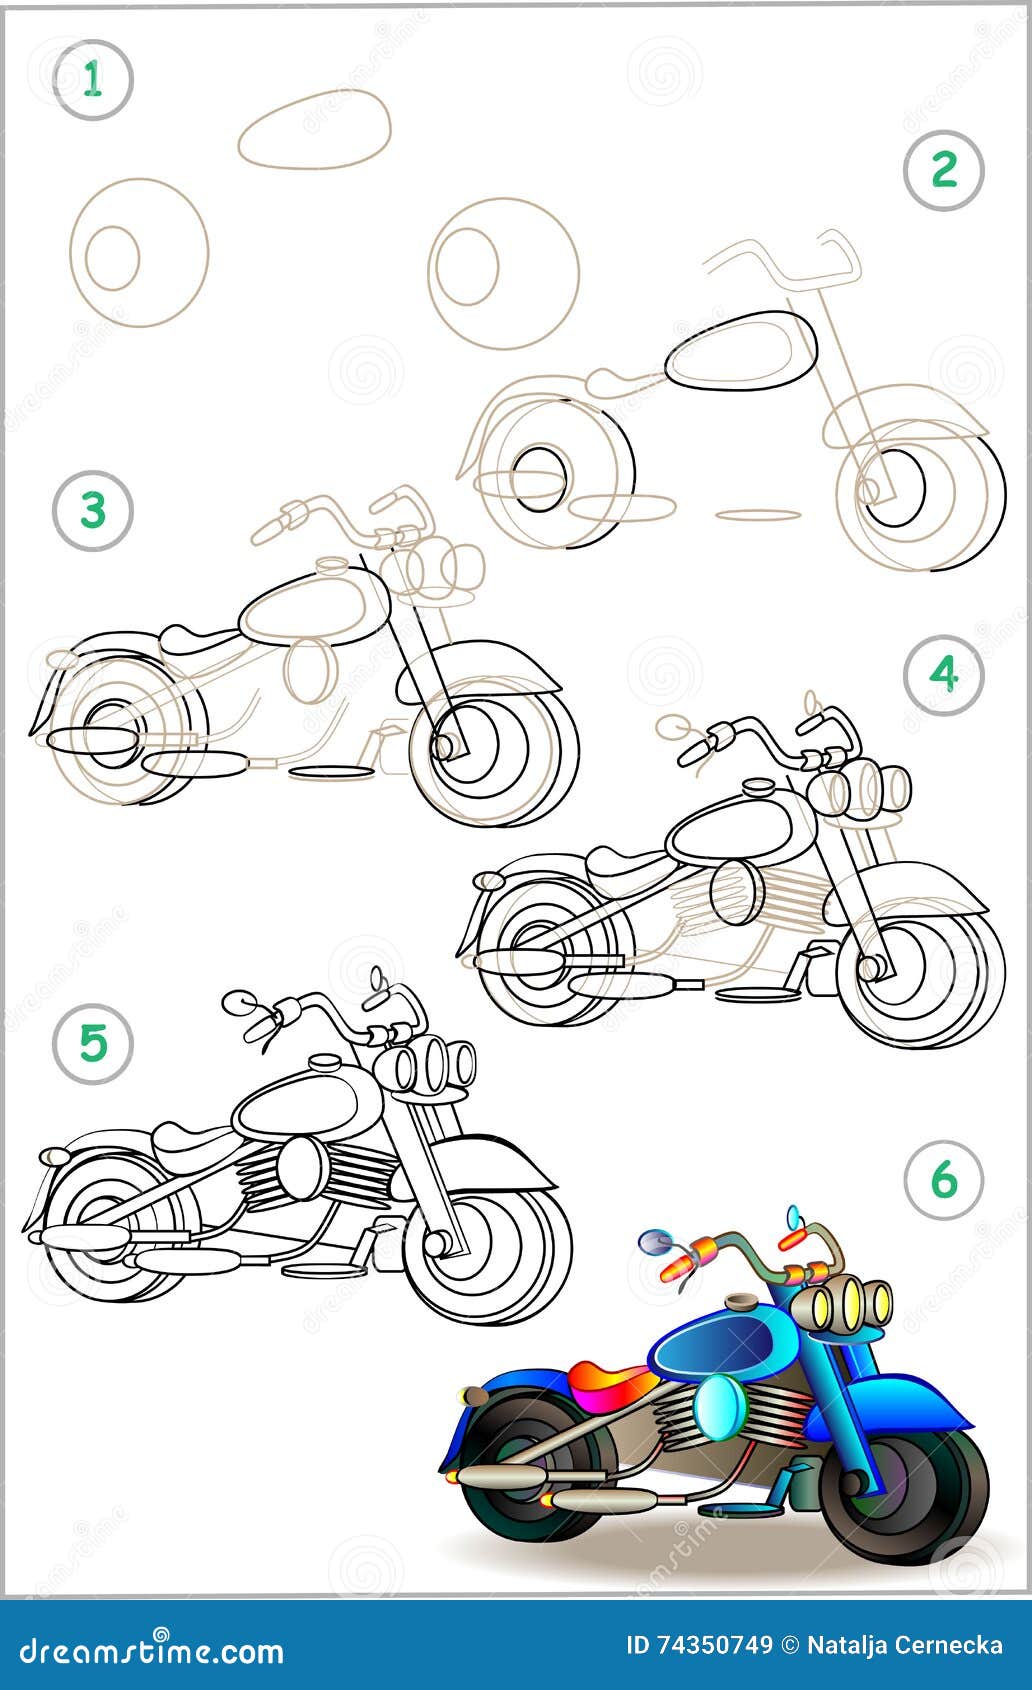 How to draw MOTO XJ 6 - step by step 